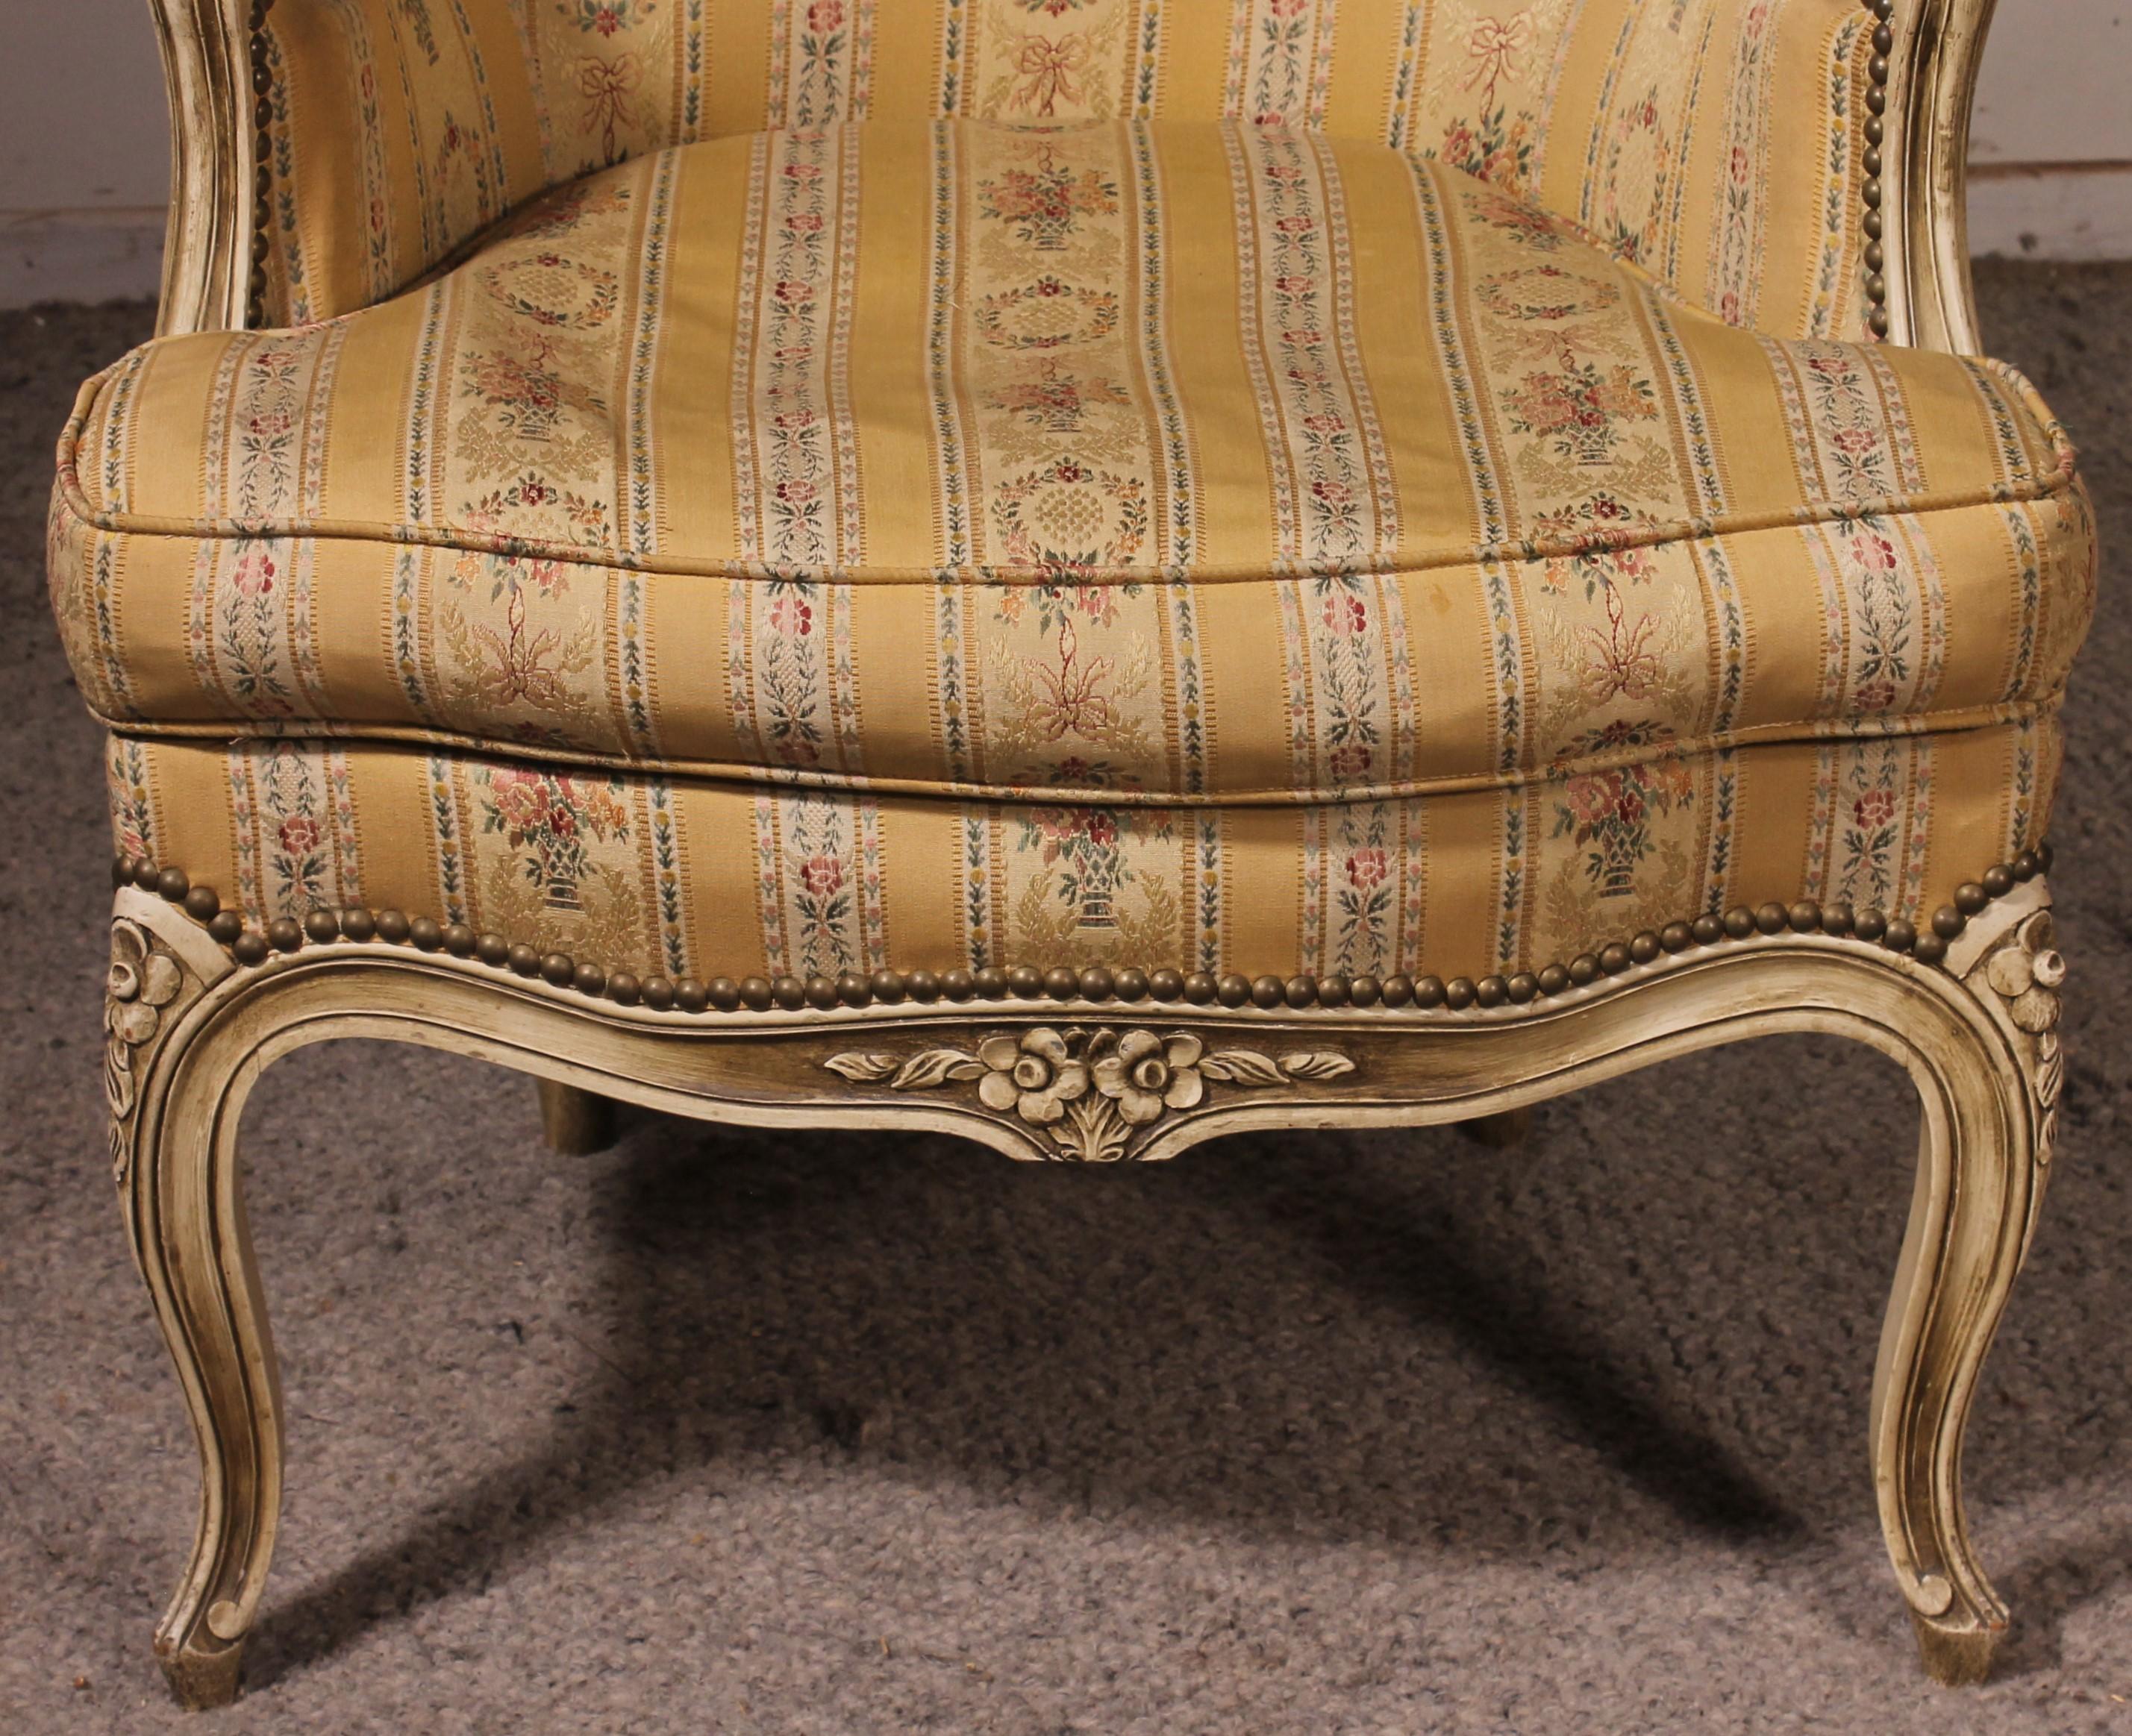 Schöner Sessel im Stil Louis XV aus lackiertem Holz, gepolstert mit einem sehr schönen Stoff
Schöne Qualität der Skulptur
Sitzhöhe 42cm
In hervorragendem Zustand.
Hinweis: leichte Abnutzung an den Armlehnen, aber wirklich minimal